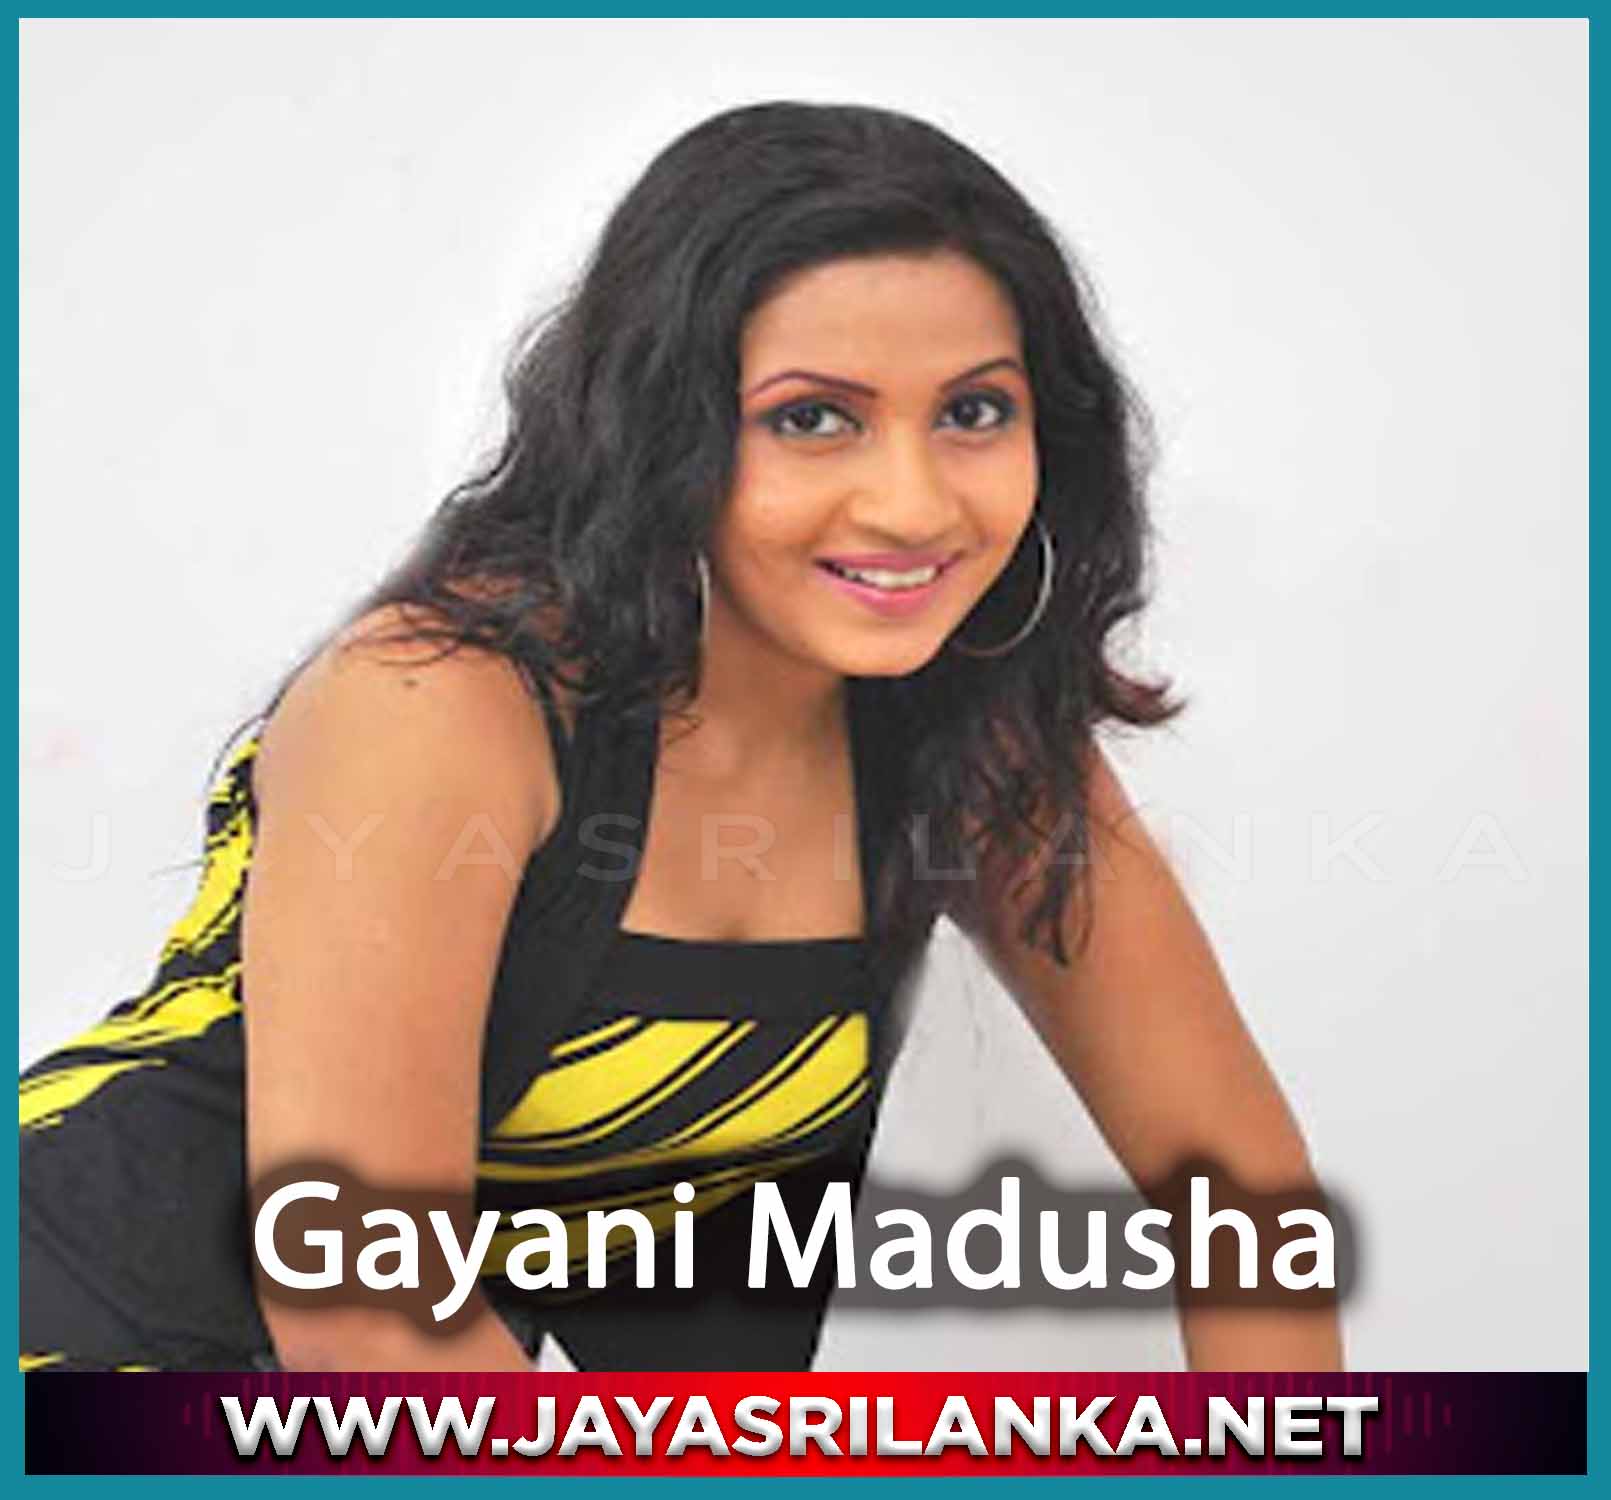 Sitha Bindunu Da - Gayani Madusha mp3 Image